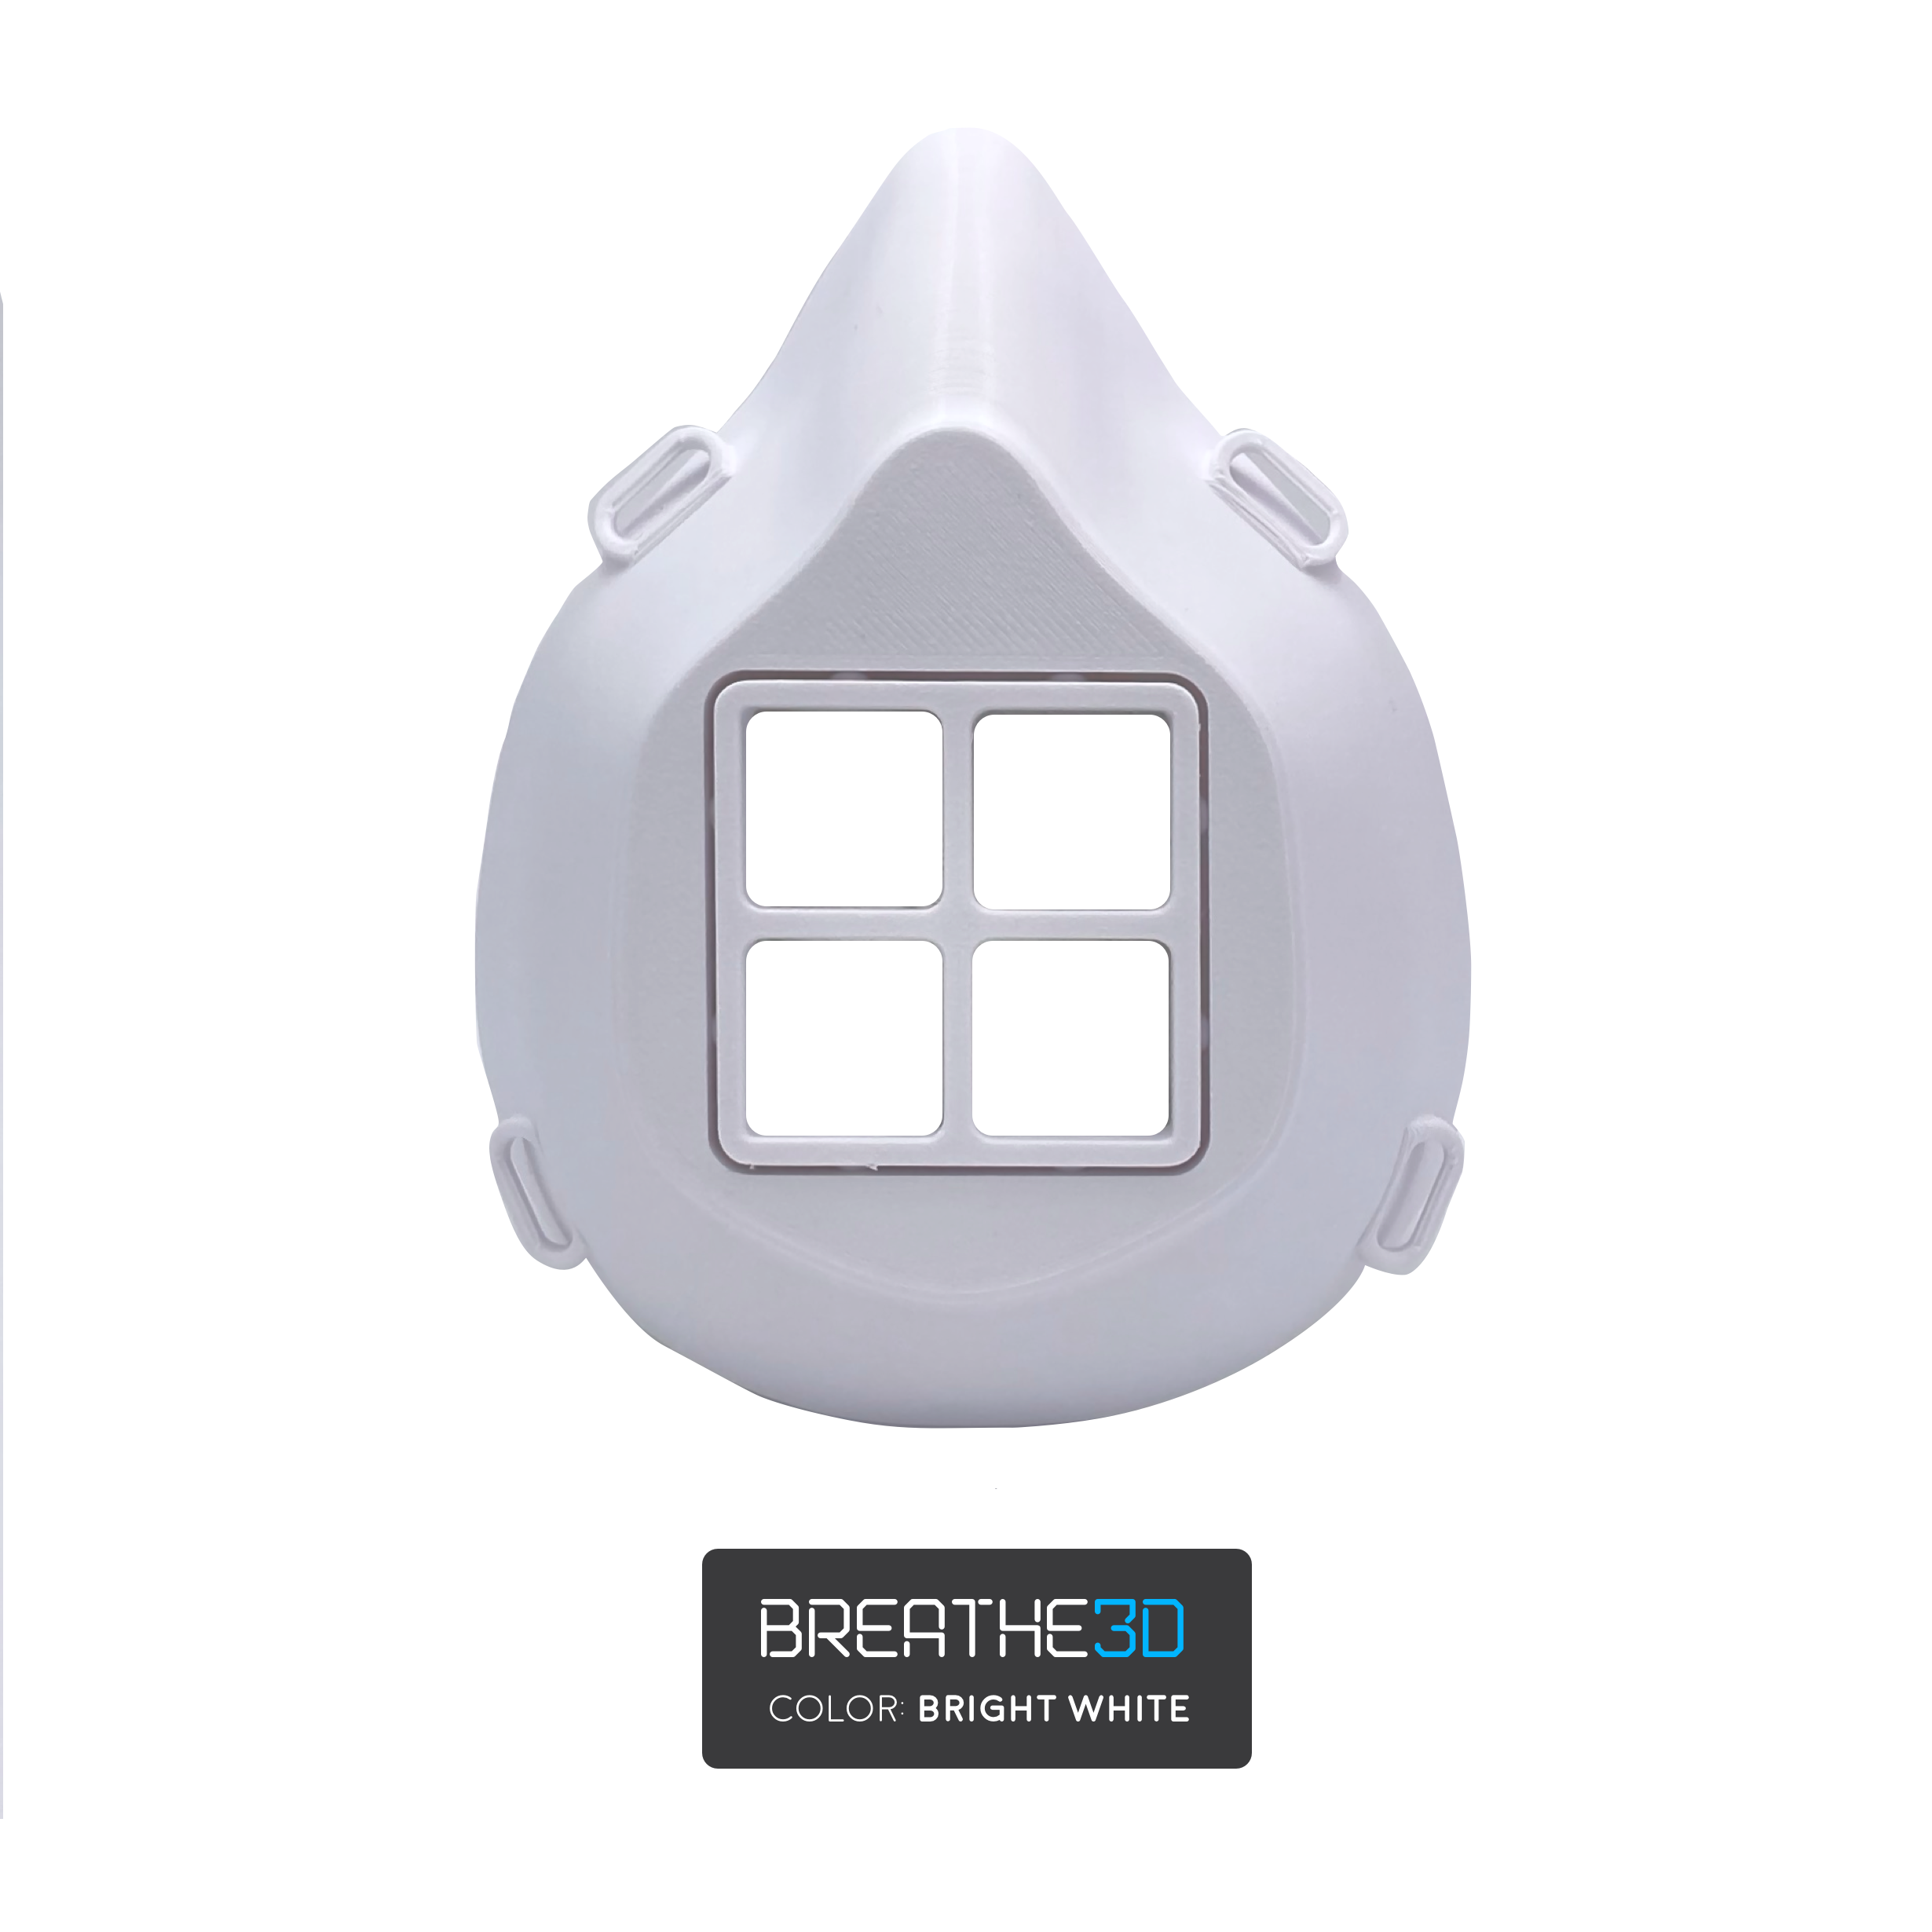 Breathe3D Mask: White